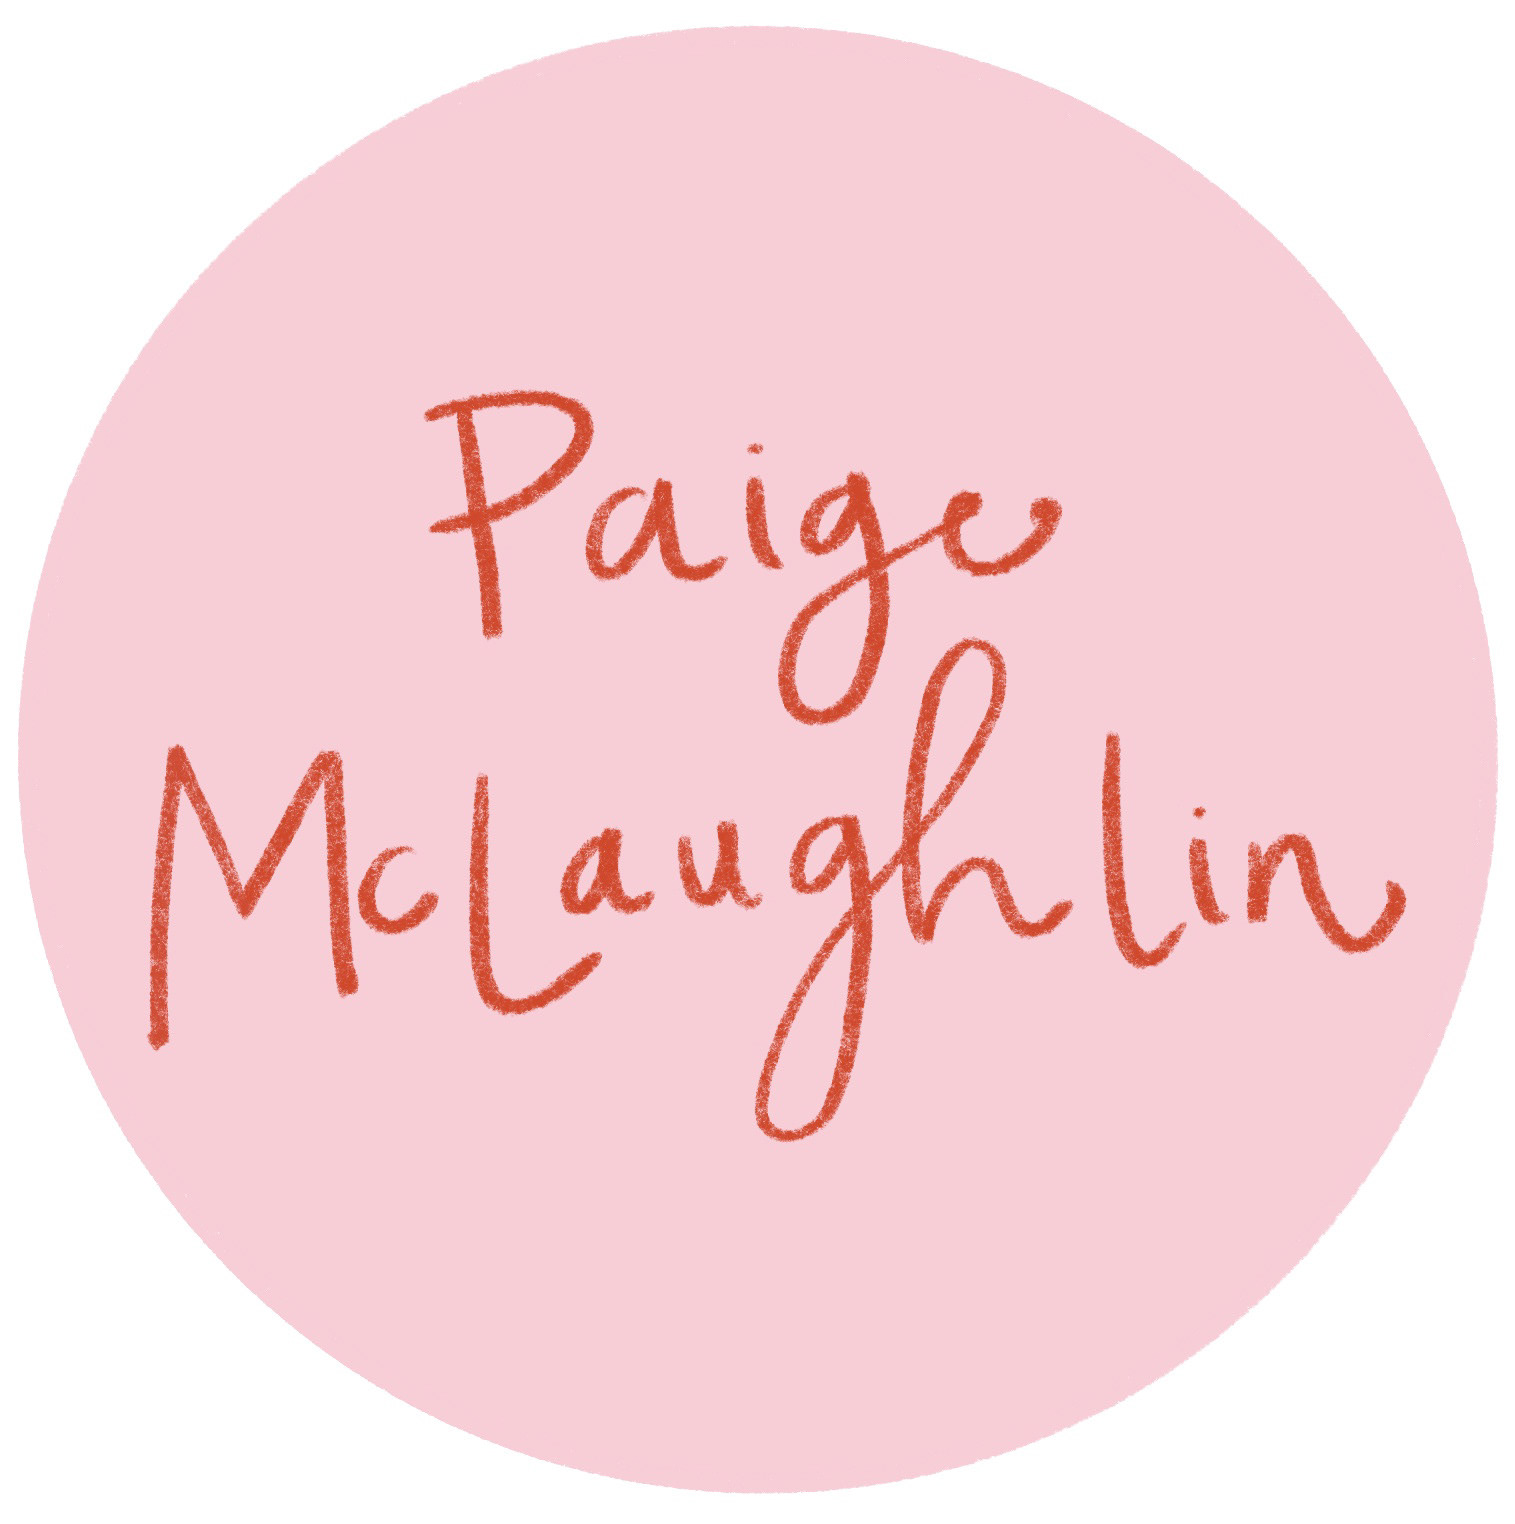 Paige McLaughlin